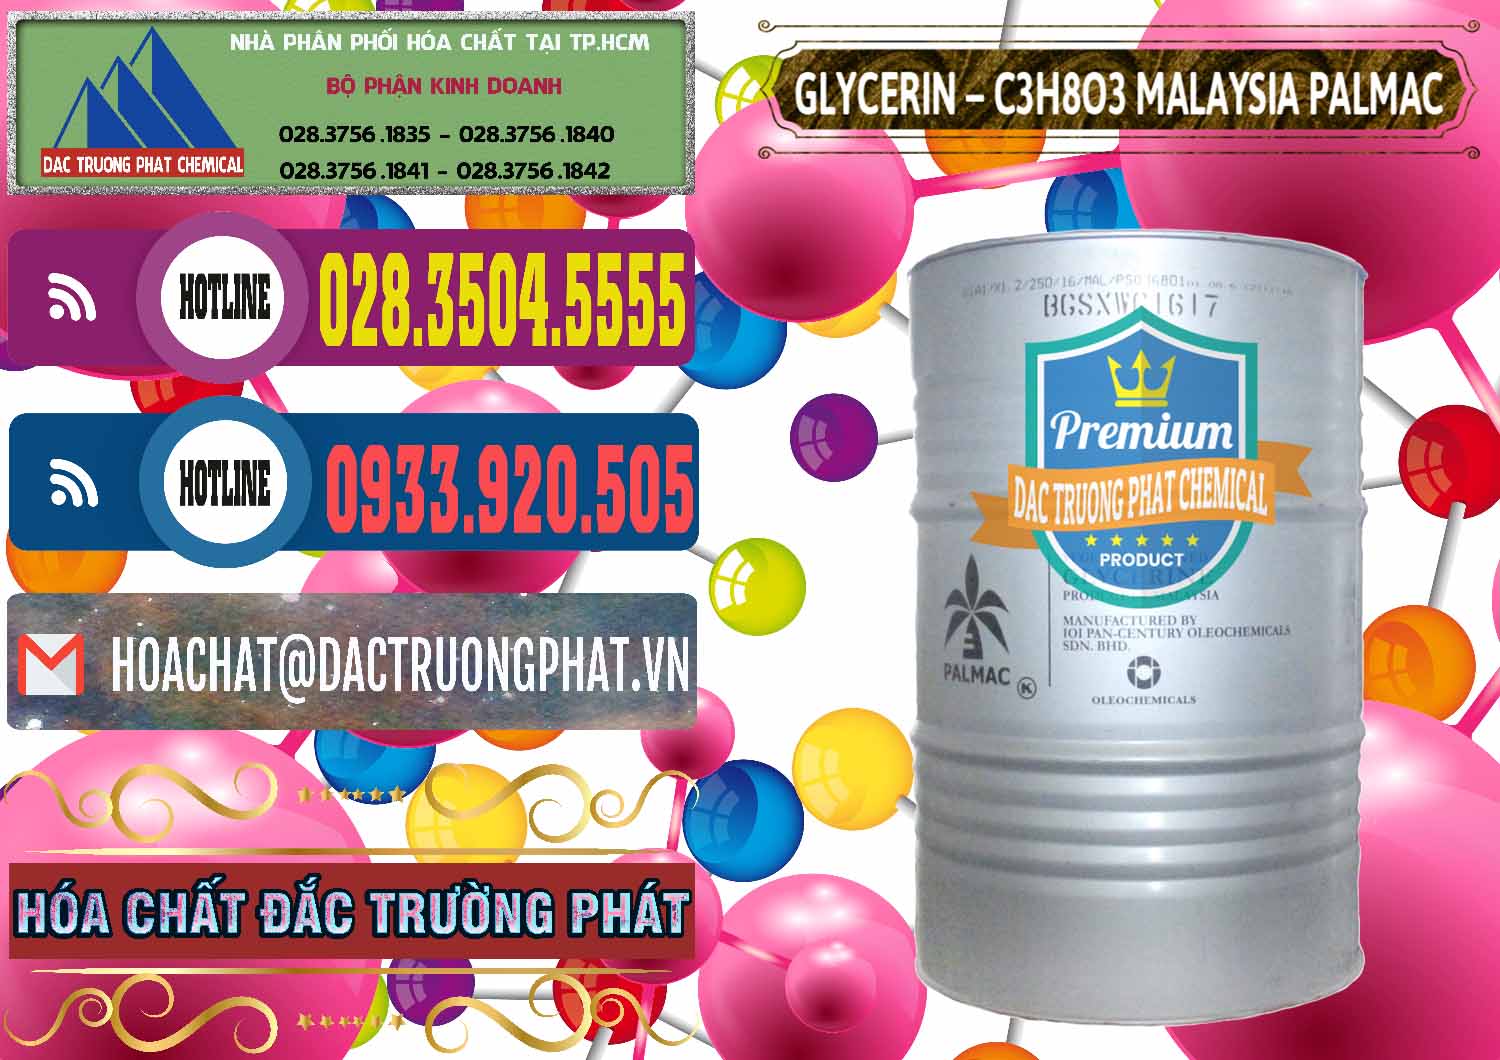 Nơi chuyên bán và cung cấp Glycerin – C3H8O3 99.7% Malaysia Palmac - 0067 - Nơi phân phối & cung cấp hóa chất tại TP.HCM - muabanhoachat.com.vn